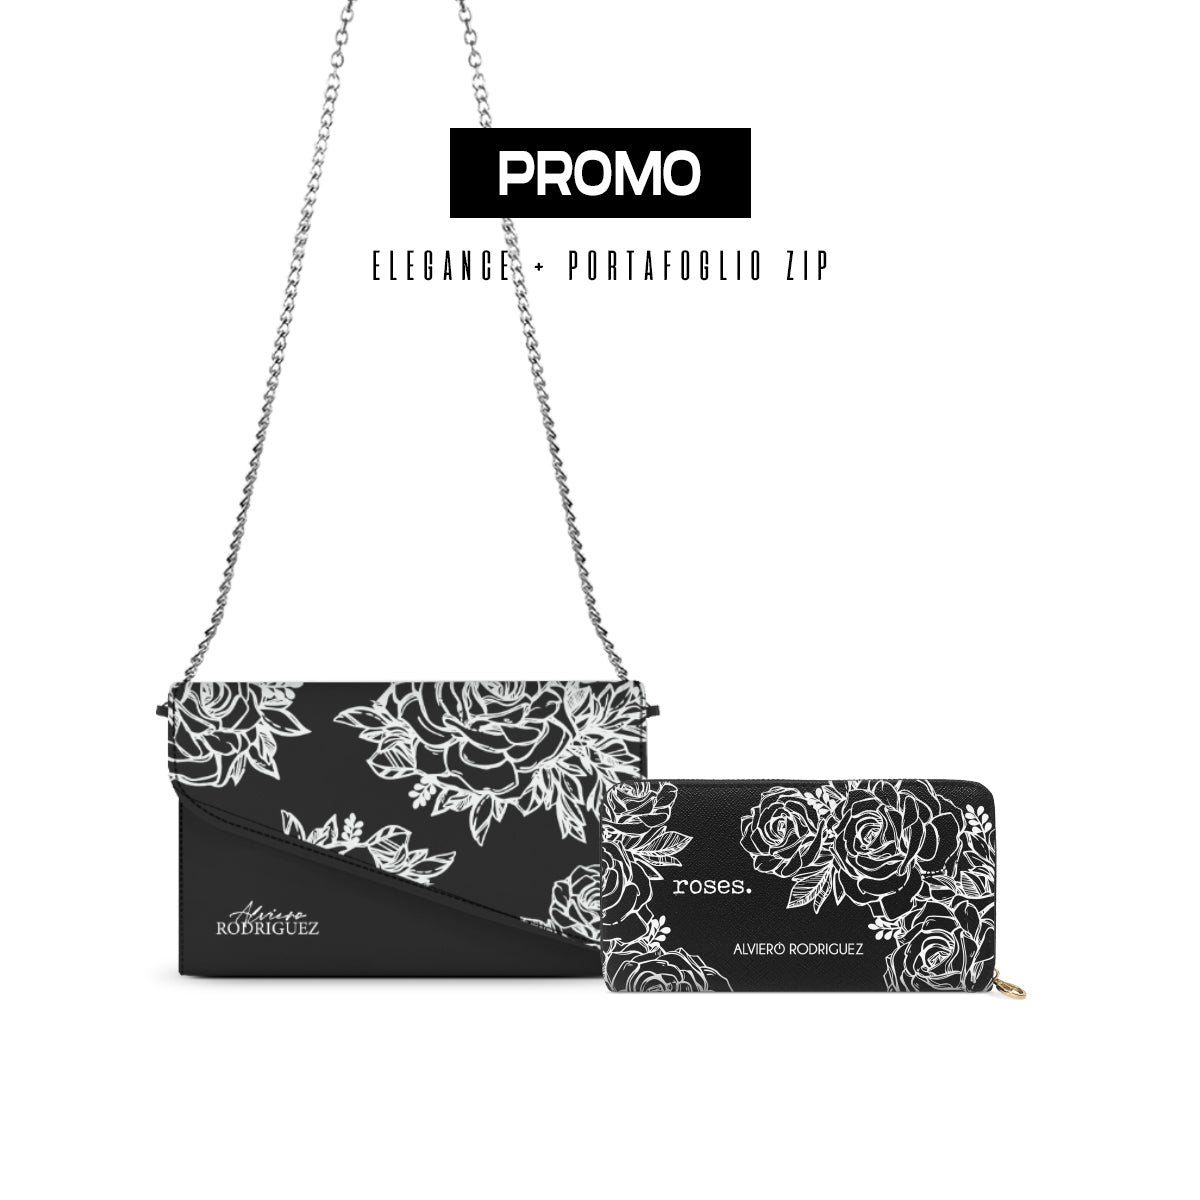 Promo Elegance + Portafoglio Zip Roses White